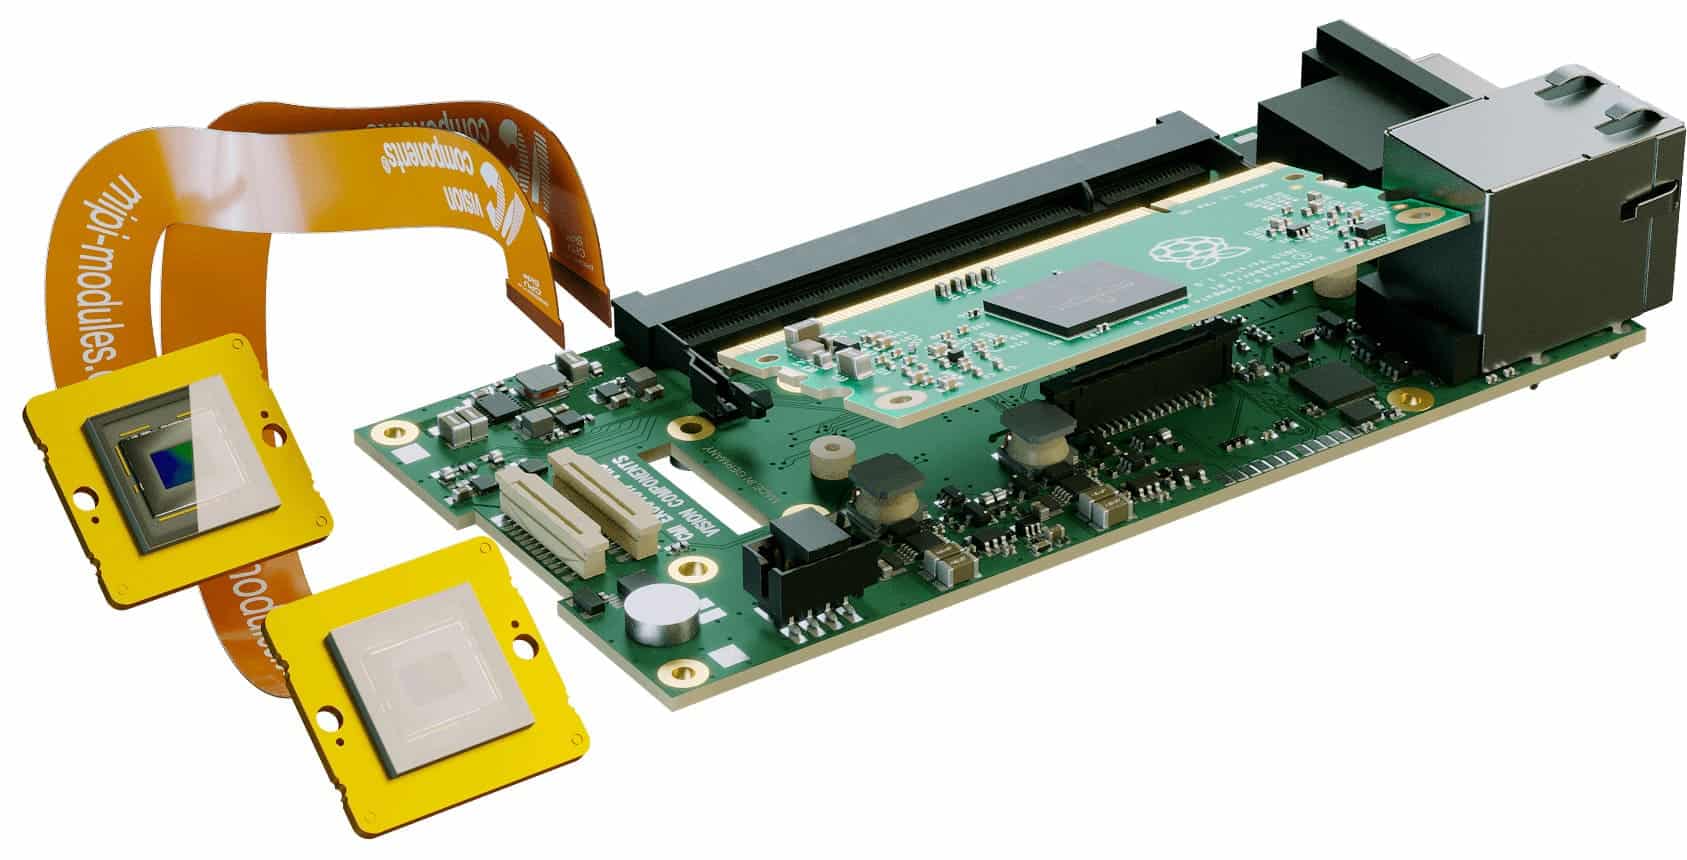 Raspberry Pi MIPI camera kit for embedded vision